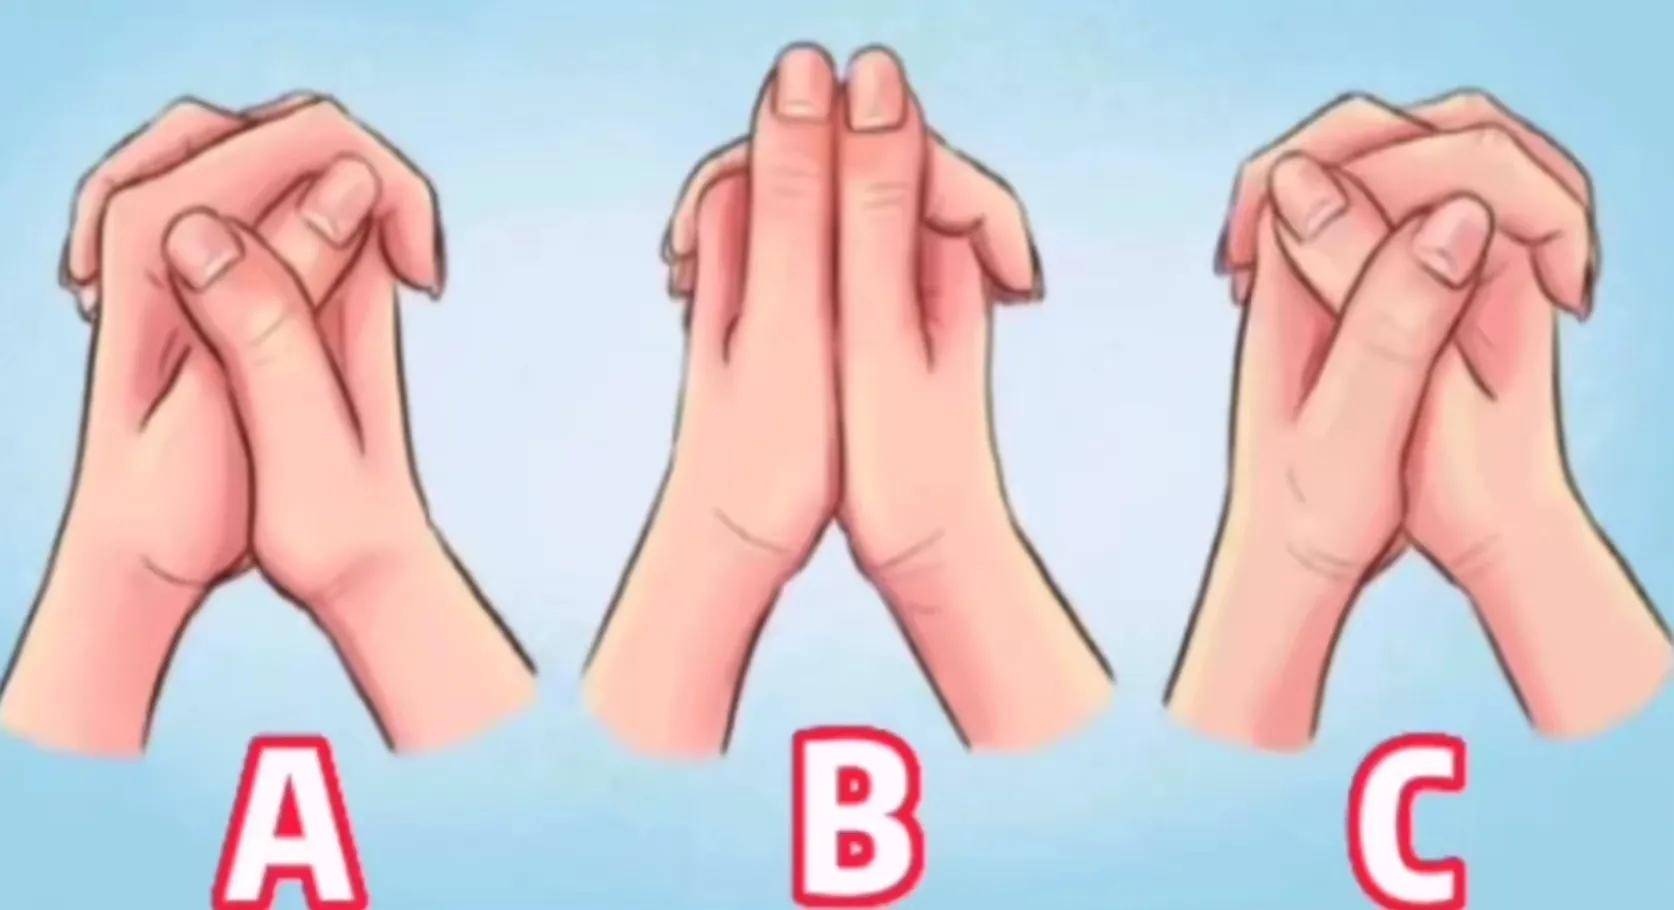 Trắc nghiệm tâm lý: Bạn thường nắm tay như thế nào? - 1